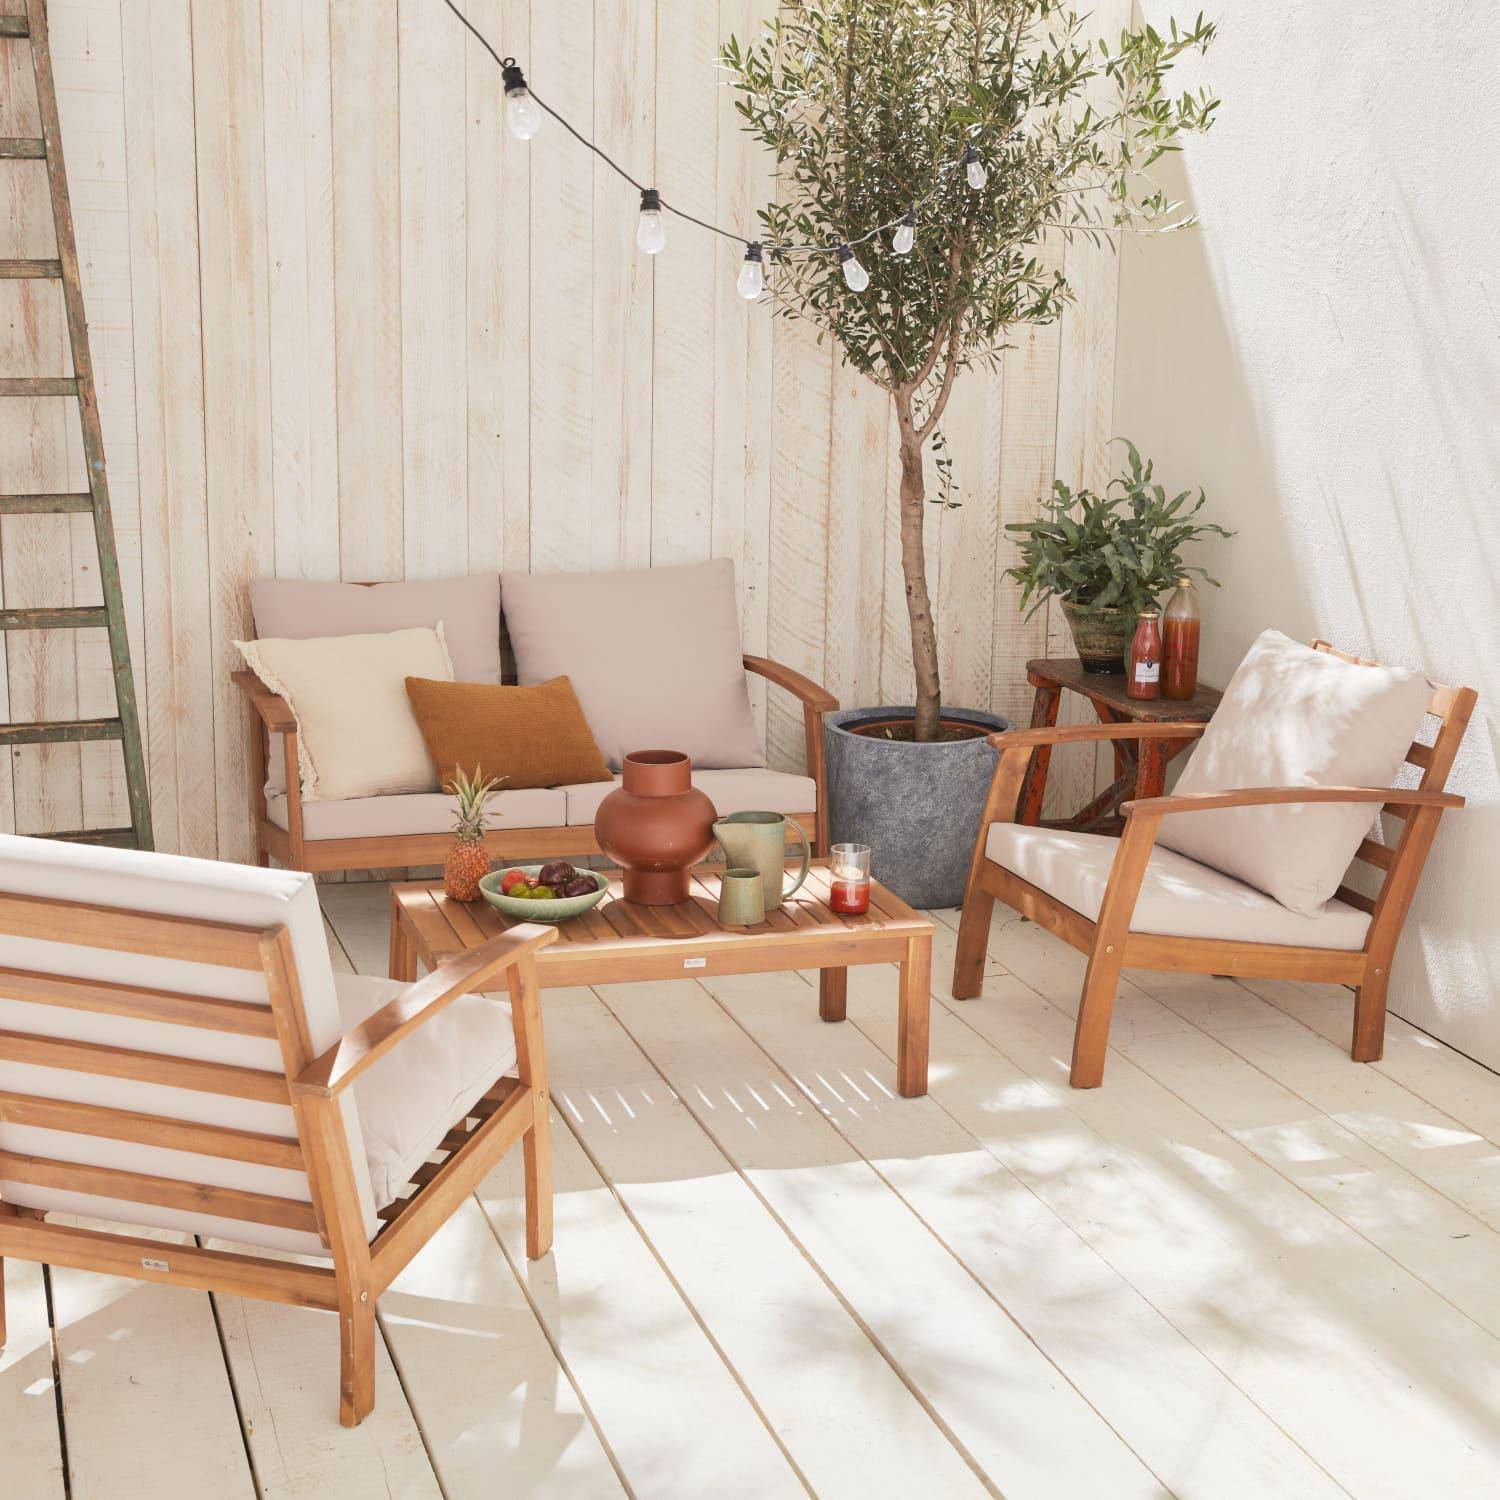 Salon de jardin en bois 4 places - Ushuaïa - Coussins écrus, canapé, fauteuils et table basse en acacia, design Photo1